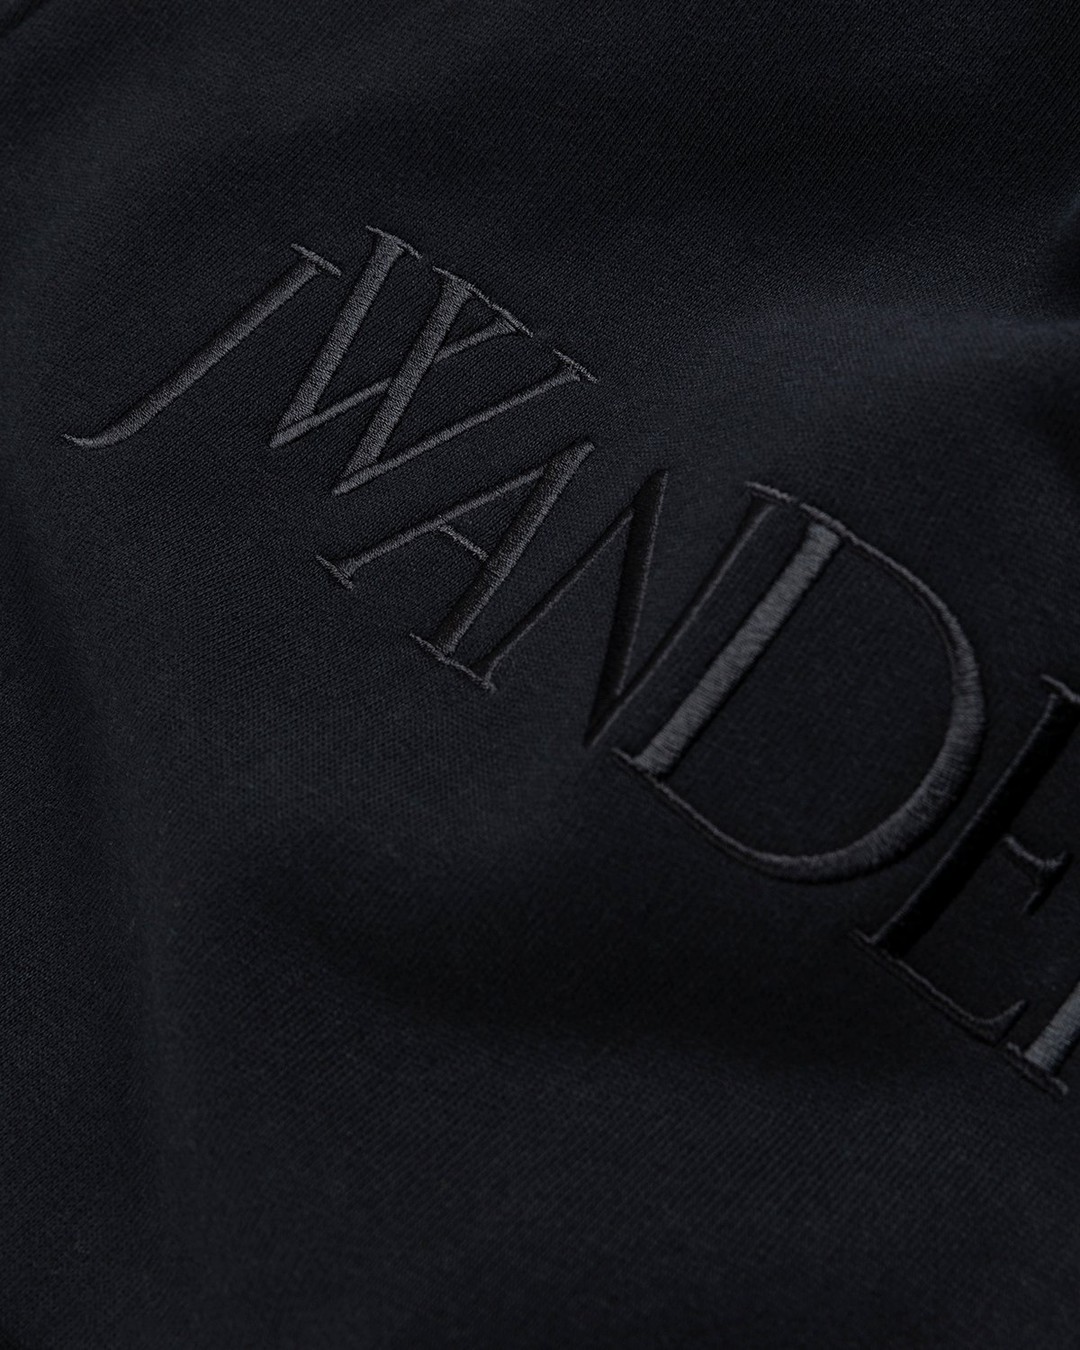 J.W. Anderson – Classic Logo Hoodie Black - Hoodies - Black - Image 4